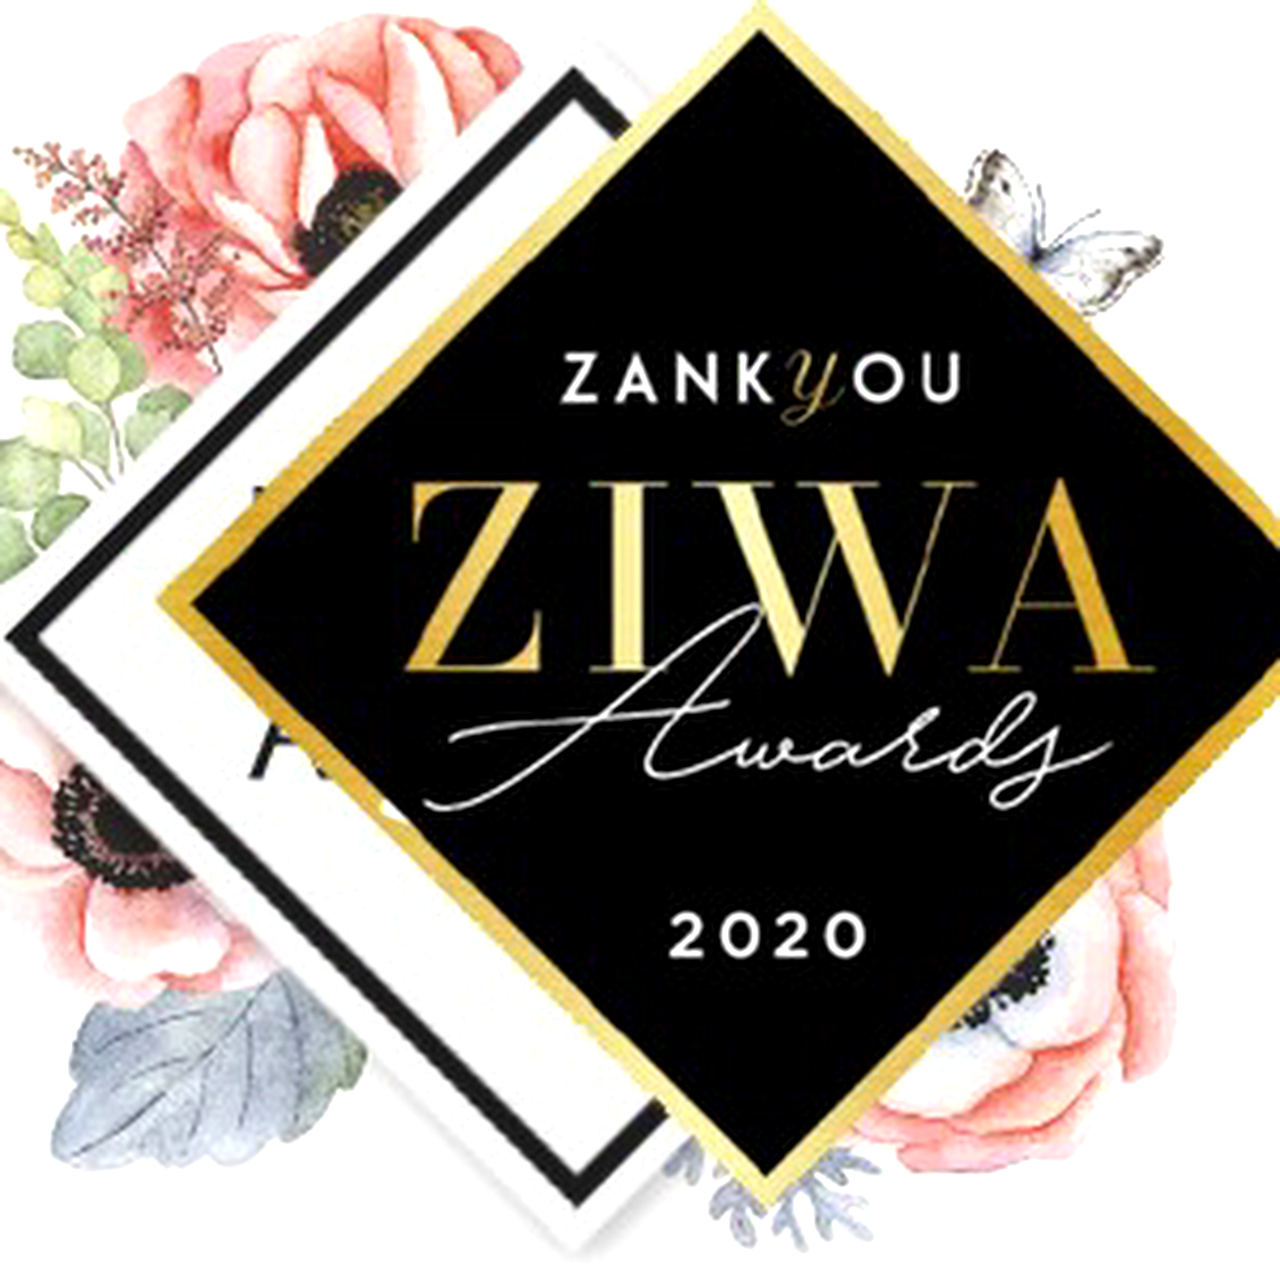 Premio Ziwa 2020 JJ Cabeleireiros